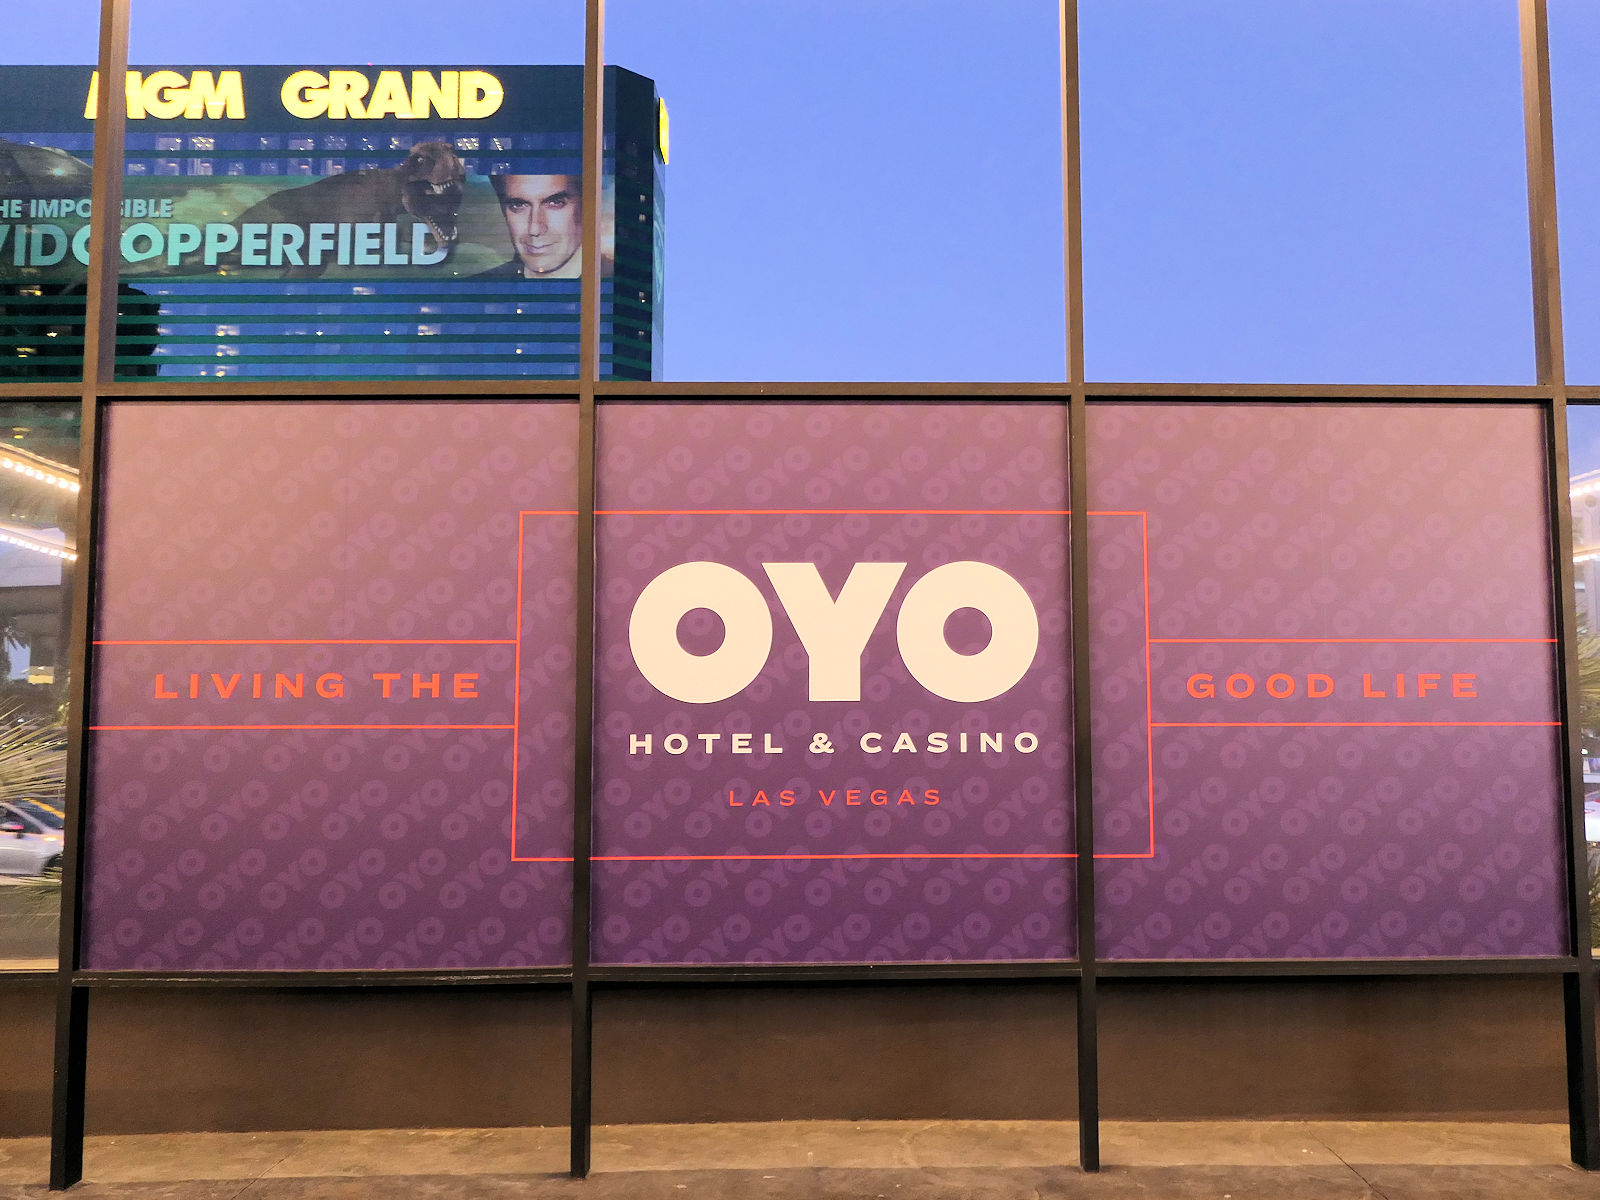 驚異の急成長ホテル OYO が、ついにラスベガスに進出